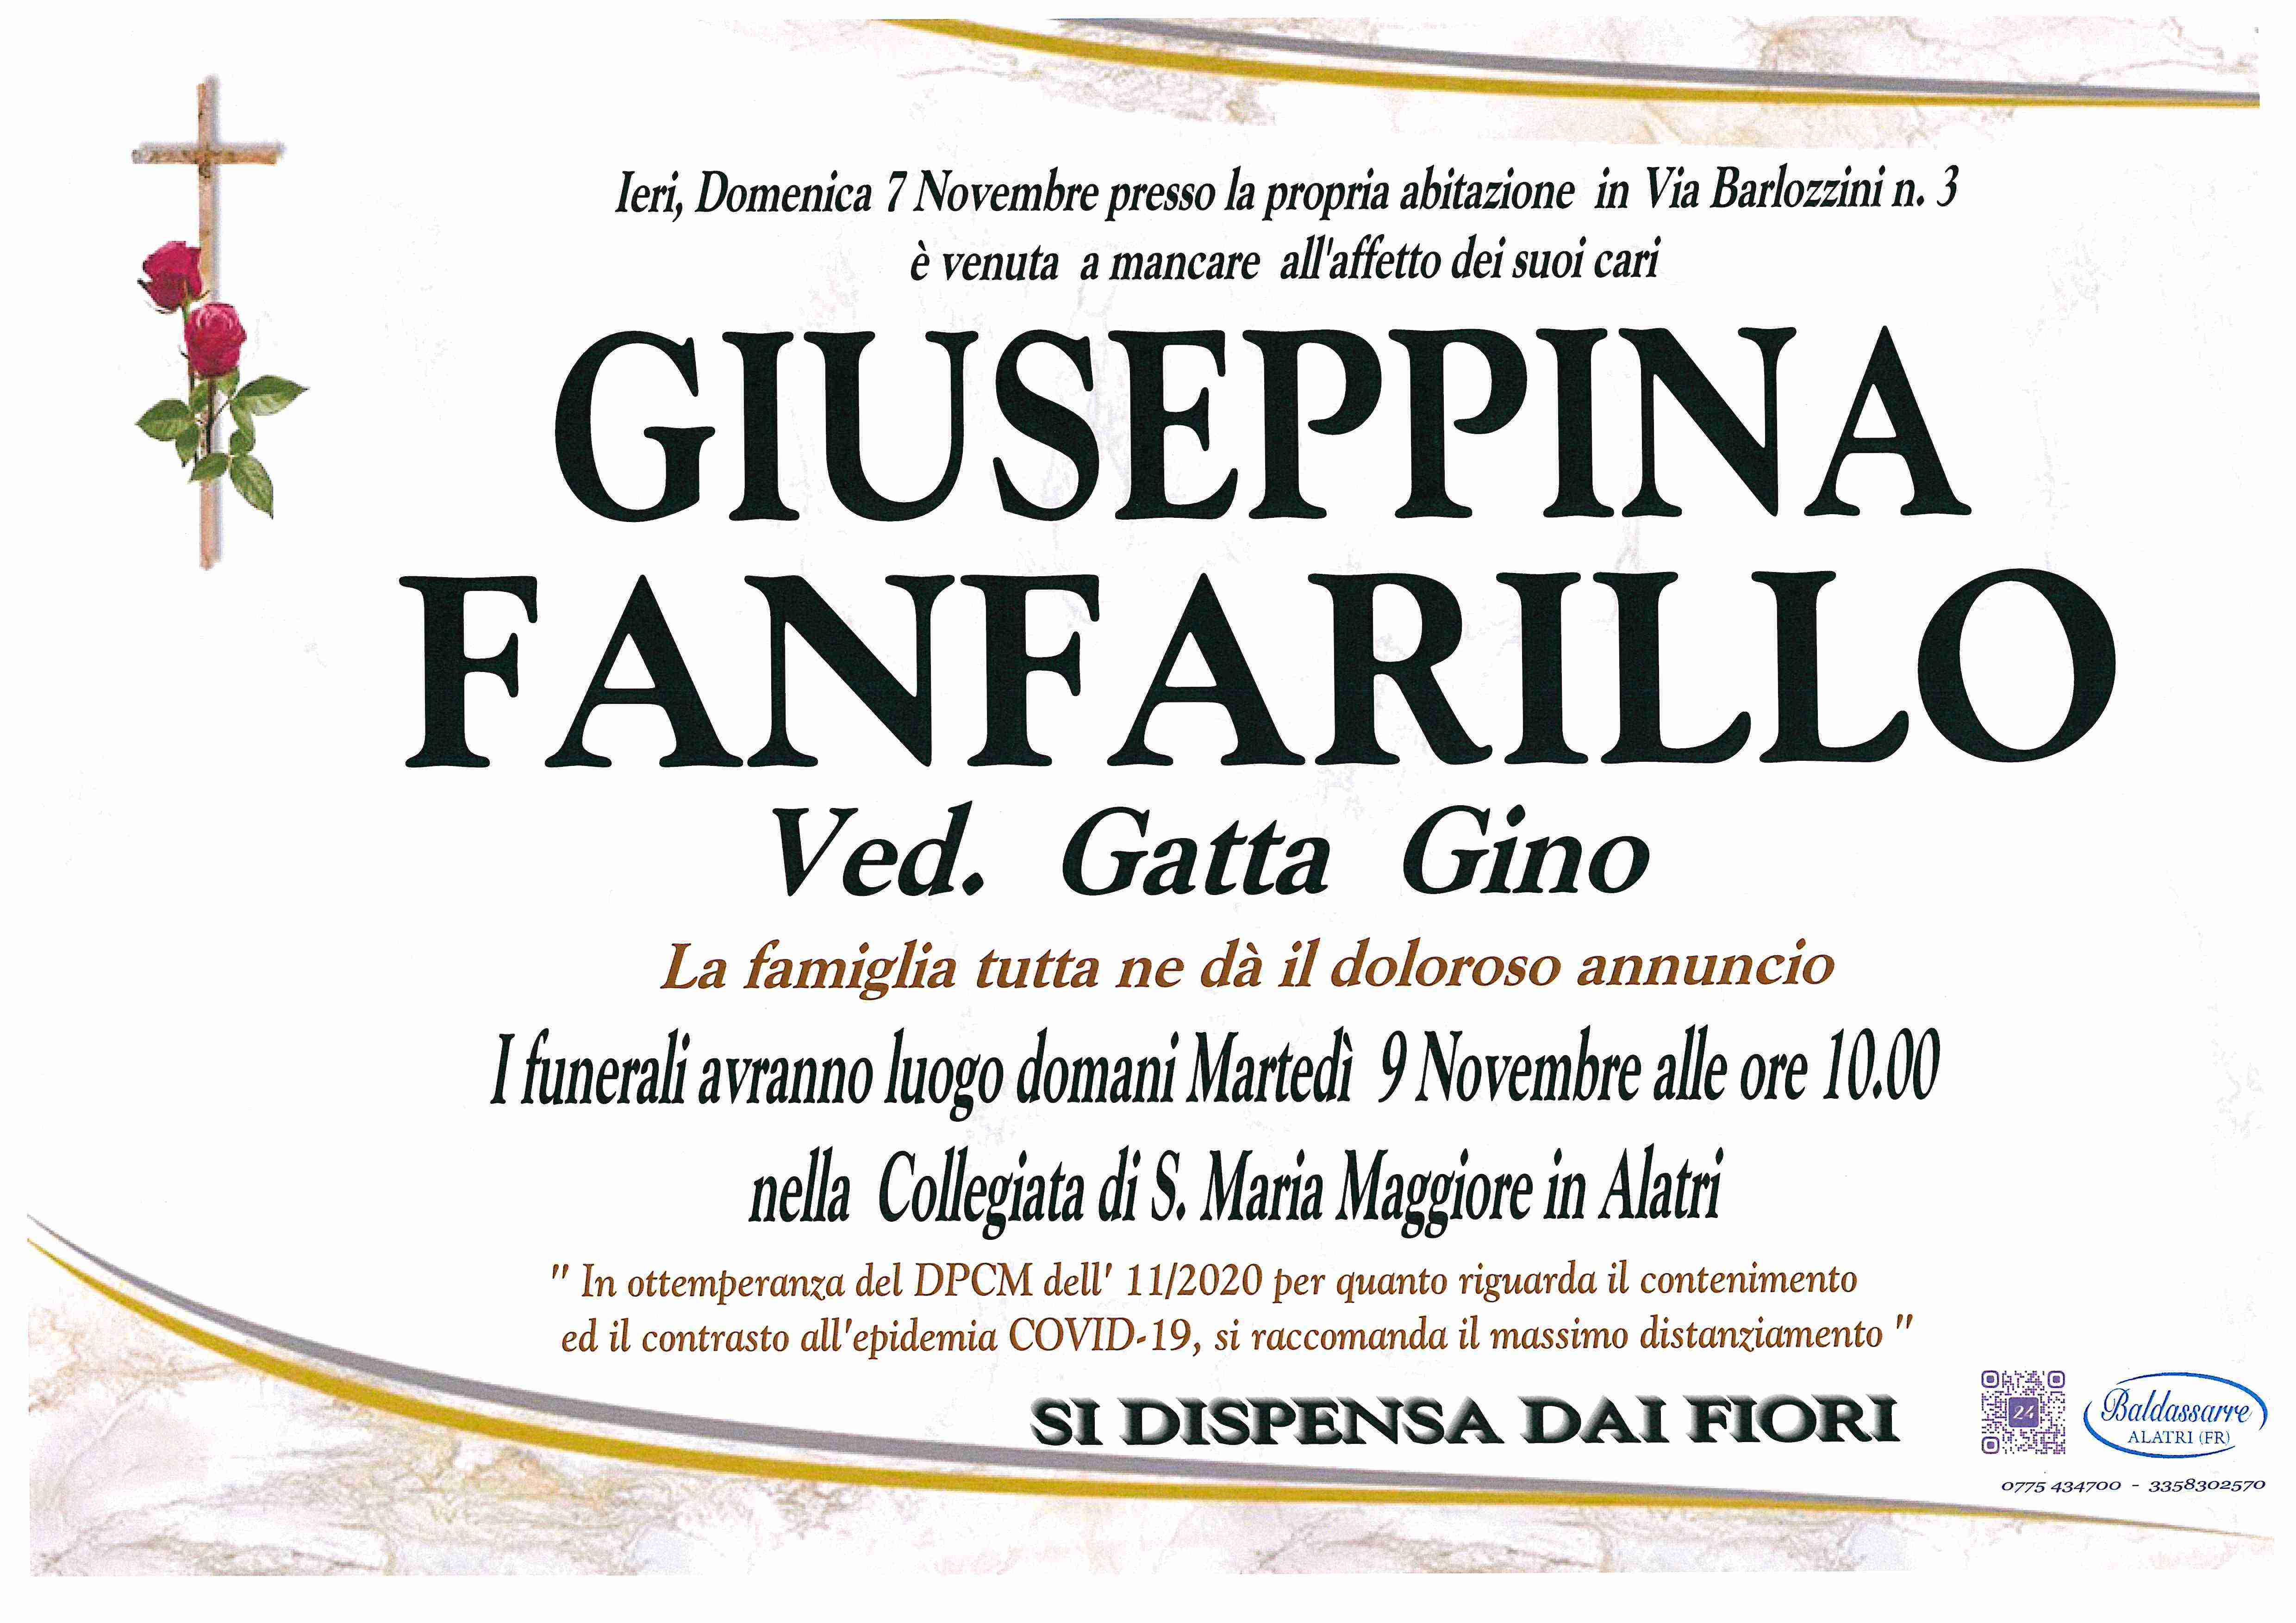 Giuseppina Fanfarillo